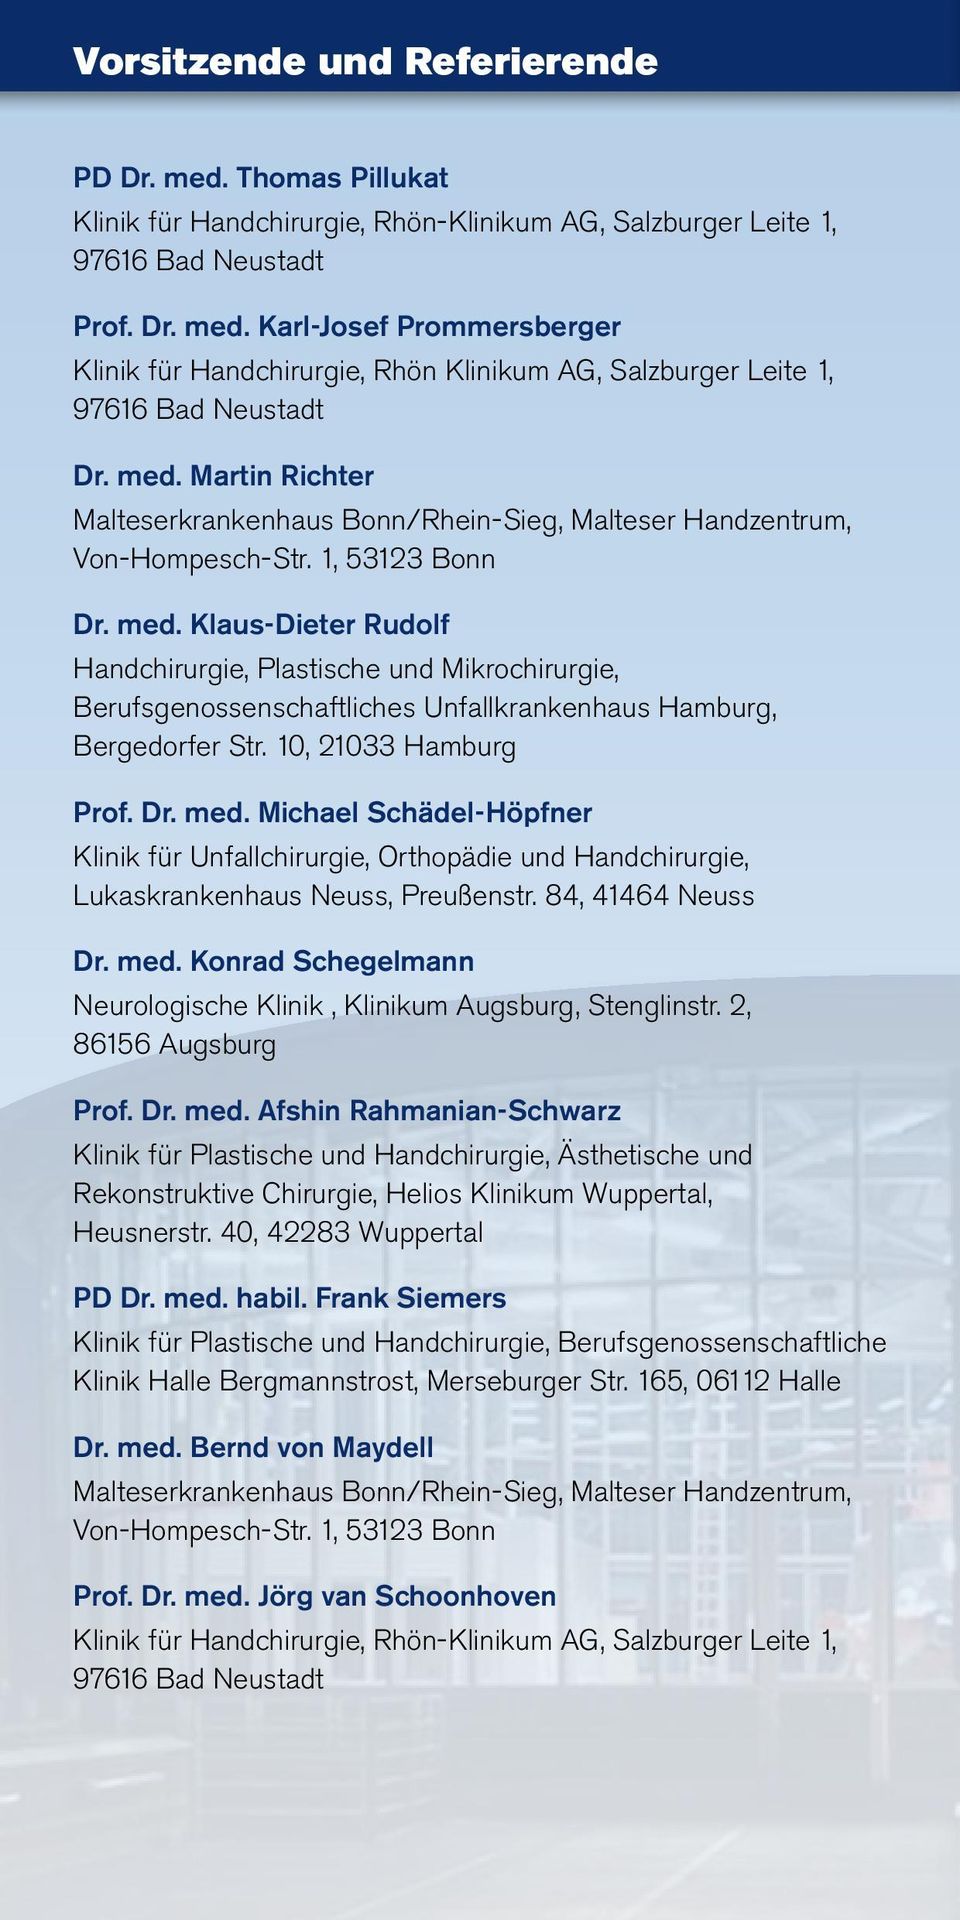 Klaus-Dieter Rudolf Handchirurgie, Plastische und Mikrochirurgie, Berufsgenossenschaftliches Unfallkrankenhaus Hamburg, Bergedorfer Str. 10, 21033 Hamburg Prof. Dr. med.